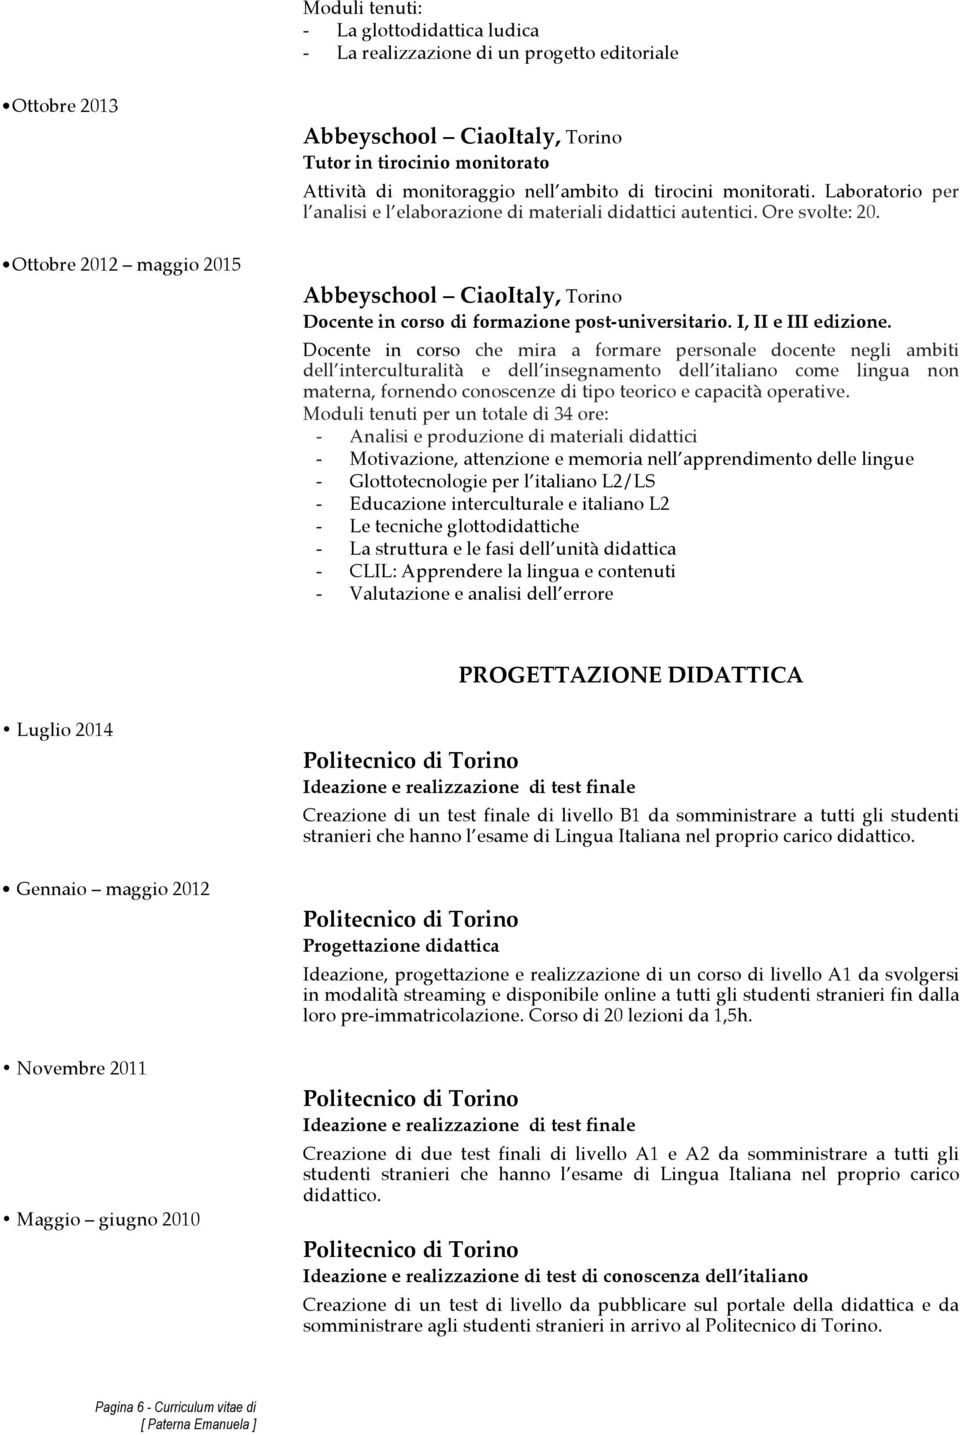 Ottobre 2012 maggio 2015 Abbeyschool CiaoItaly, Torino Docente in corso di formazione post-universitario. I, II e III edizione.